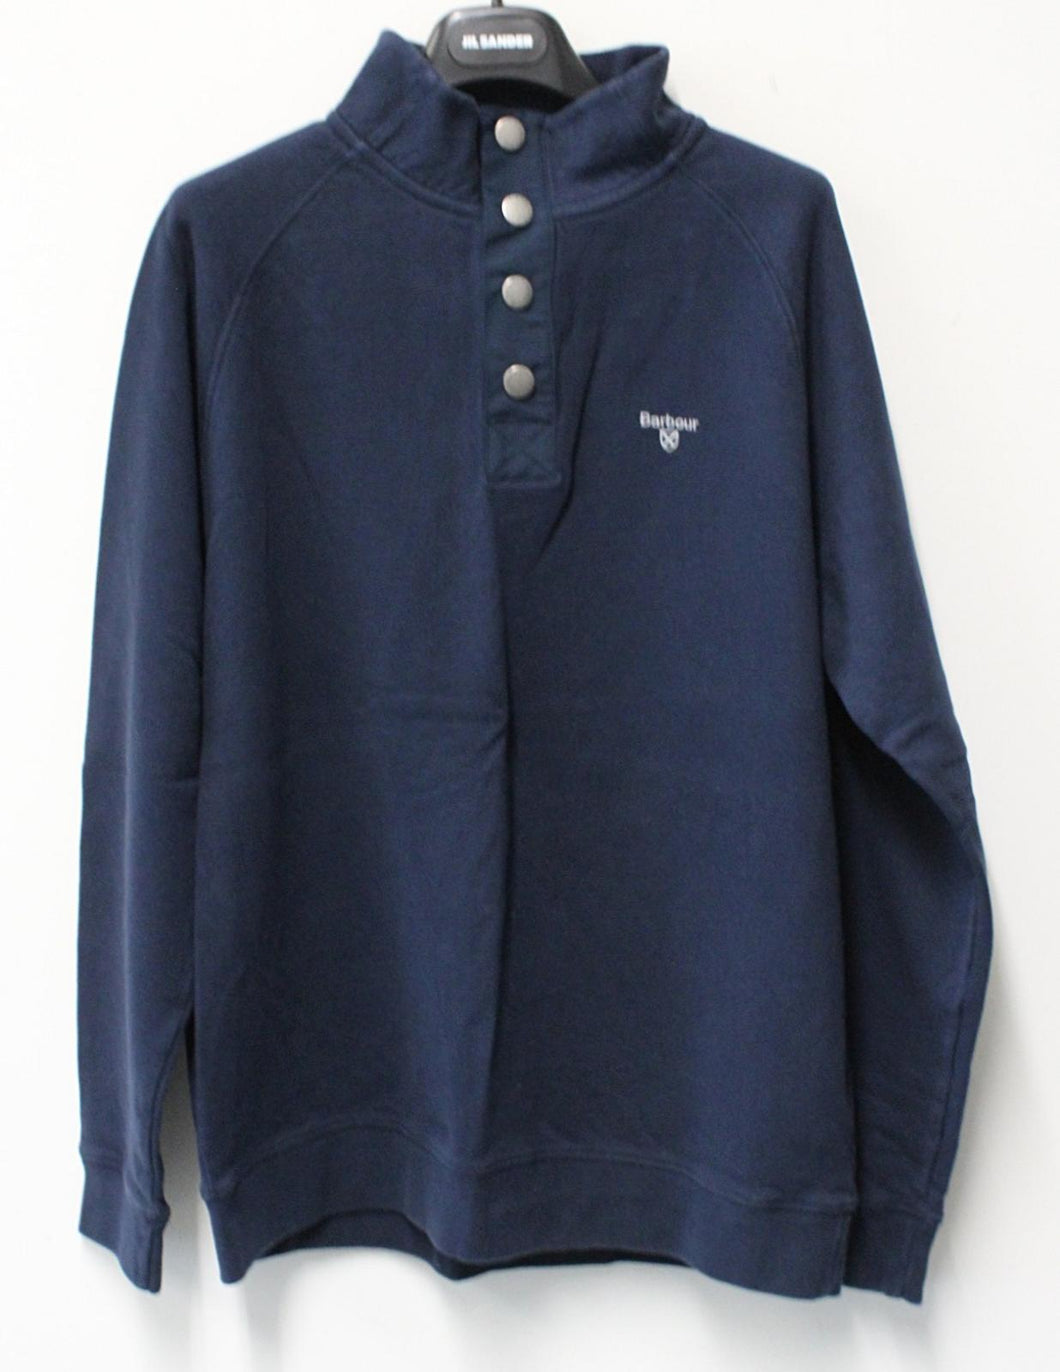 BARBOUR Men's Half Snap Button Pure Cotton Jumper Sweatshirt Navy Blue L